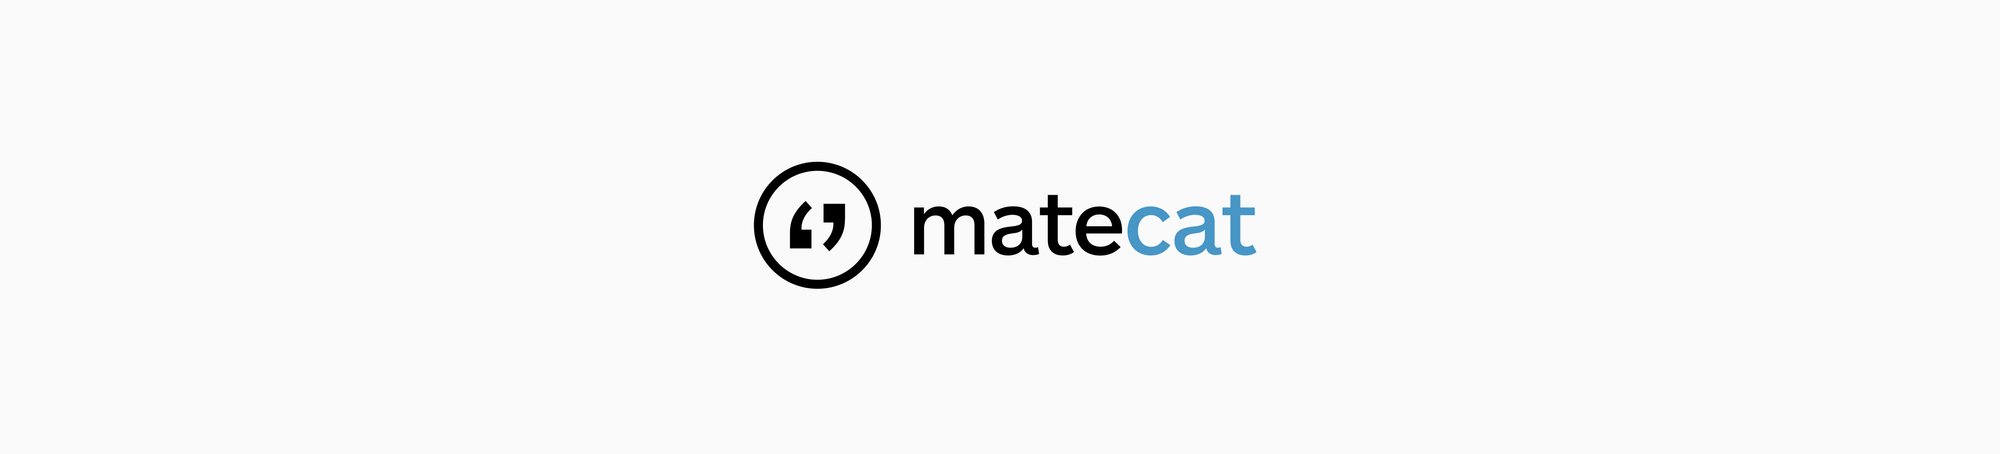 matecat download